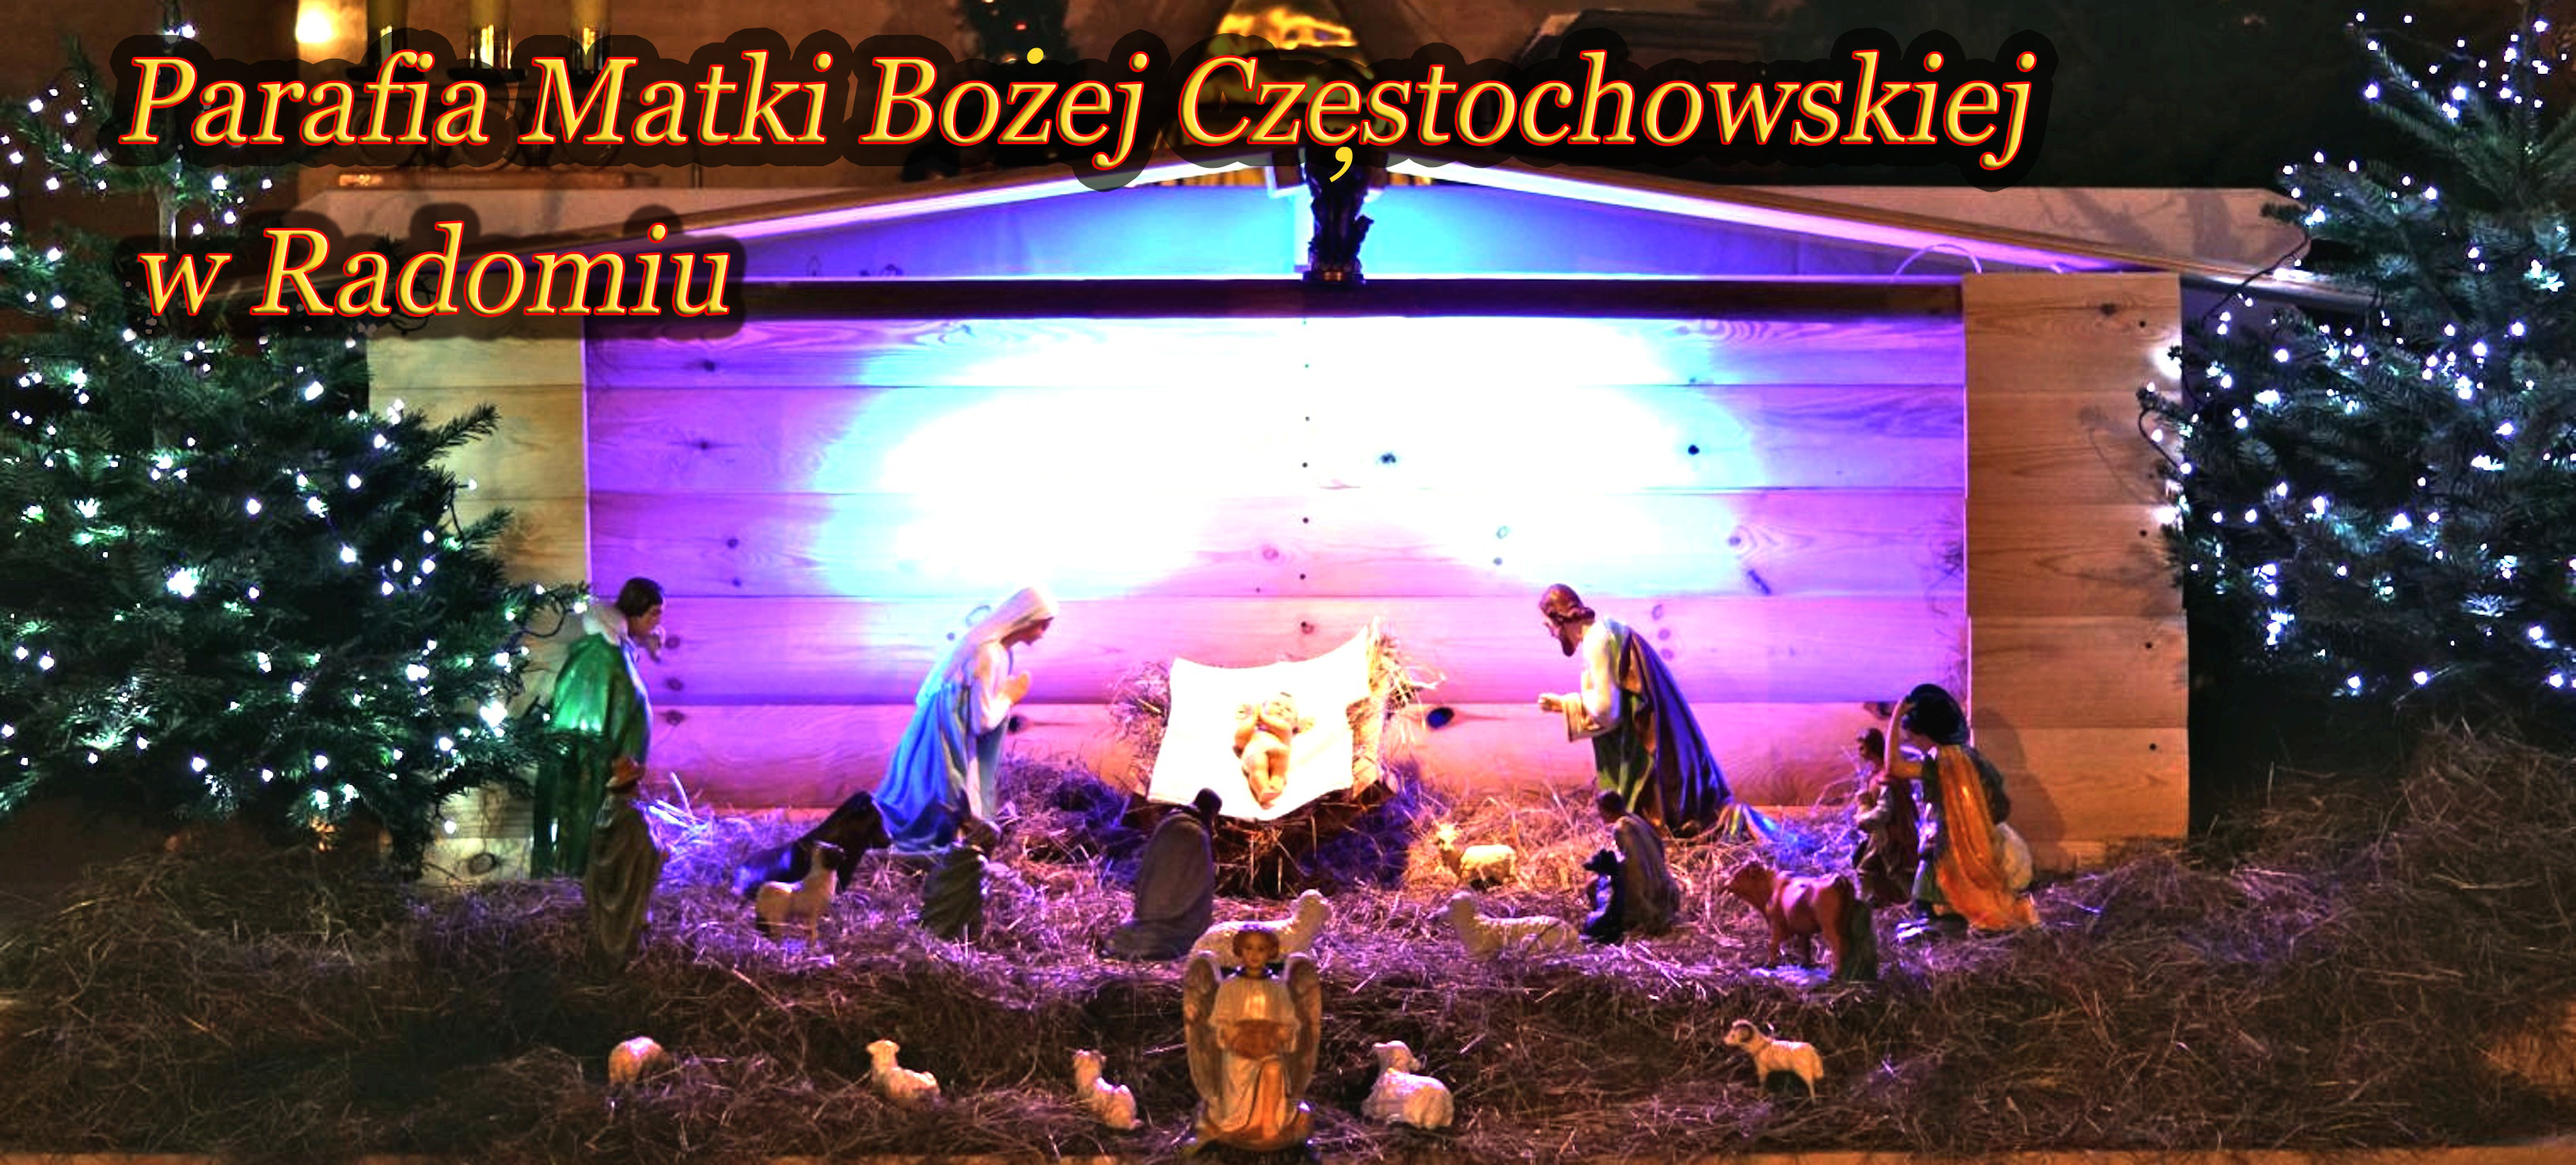 Parafia Matki Bożej Częstochowskiej